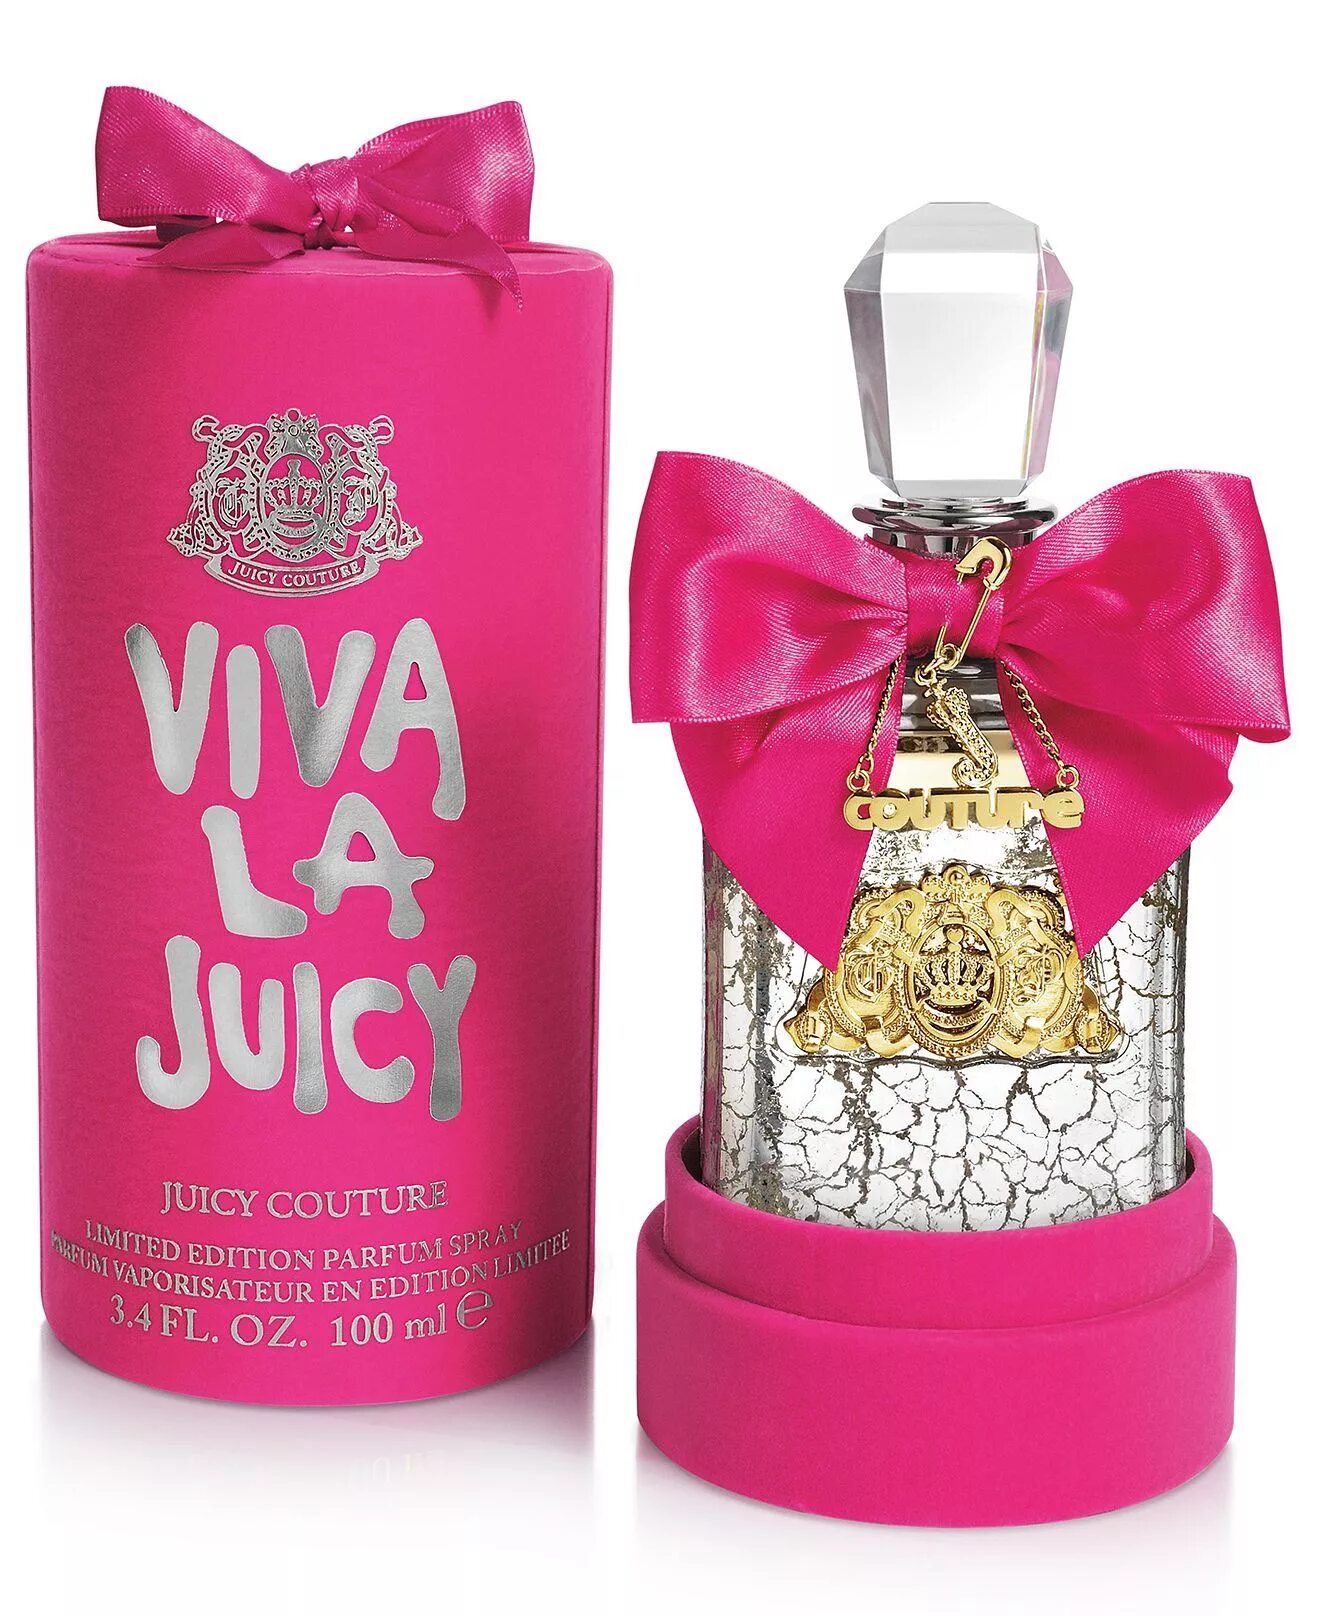 Juicy couture viva. Духи juicy Couture Viva la Limited Edition. Juicy Couture Viva la juicy w, 100 мл Parfum Spray, Limited Edition. Viva la juicy духи. Вива ла Джуси (juicy Couture Viva la juicy.